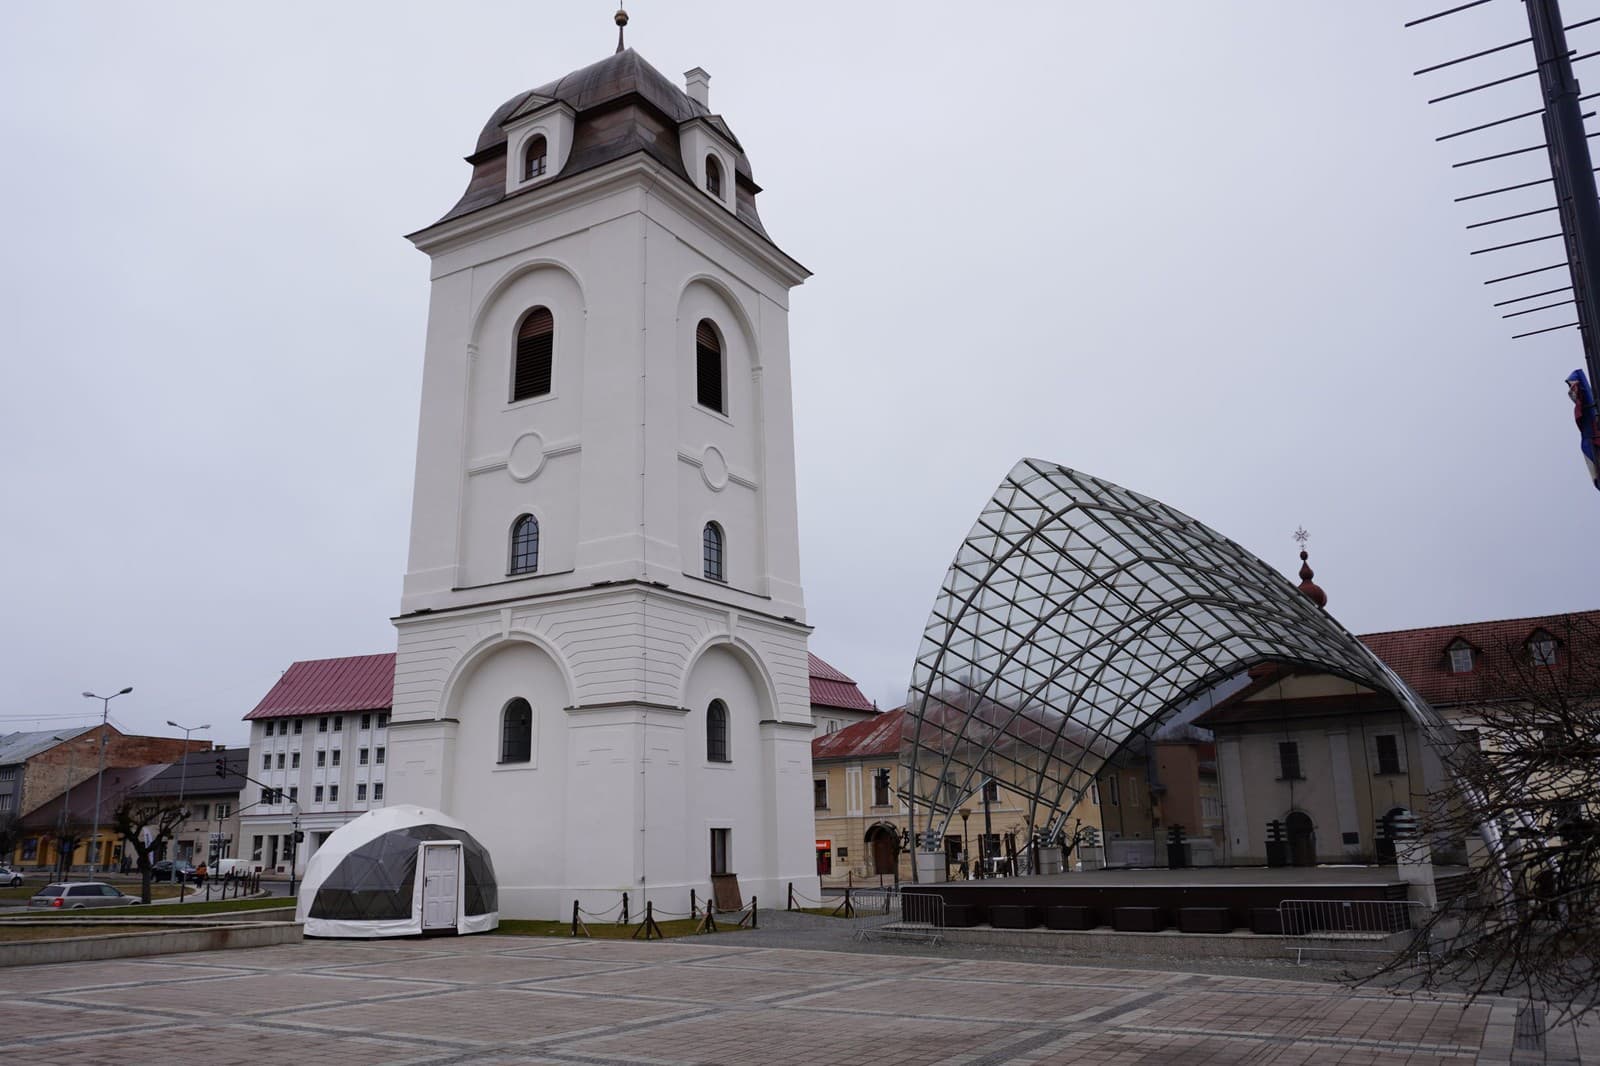 Mestská veža v Brezne bola v minulom ročníku súťaže ocenená cenou Fénix – Kultúrna pamiatka roka za výnimočný počin záchrany pamiatky.